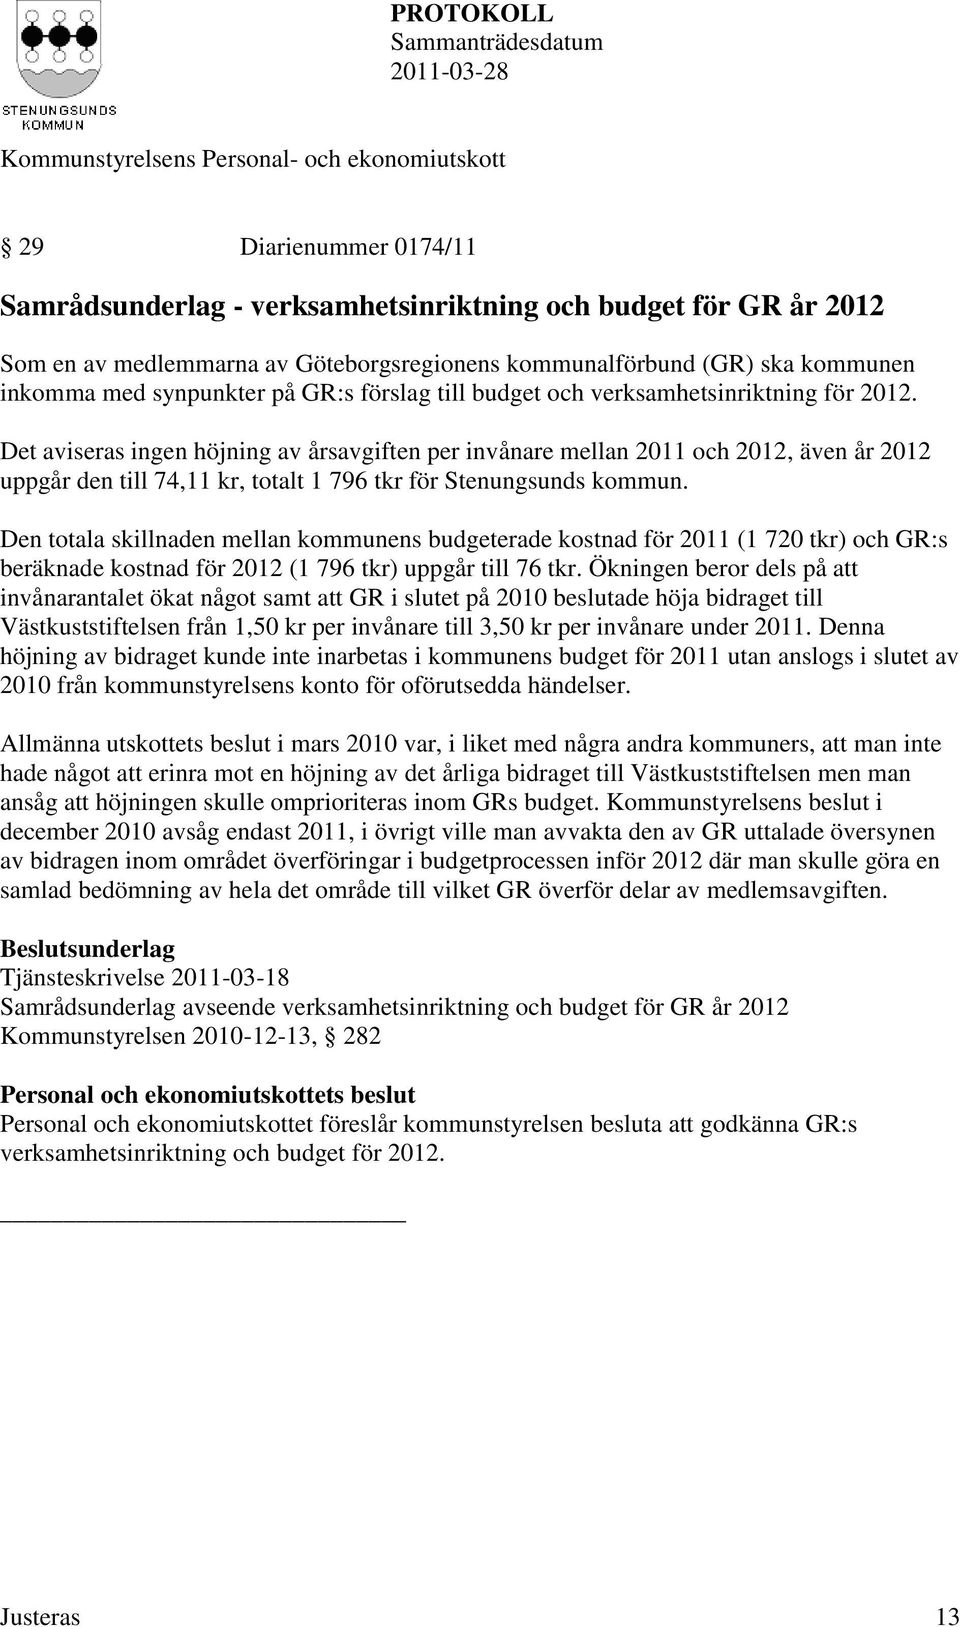 Det aviseras ingen höjning av årsavgiften per invånare mellan 2011 och 2012, även år 2012 uppgår den till 74,11 kr, totalt 1 796 tkr för Stenungsunds kommun.